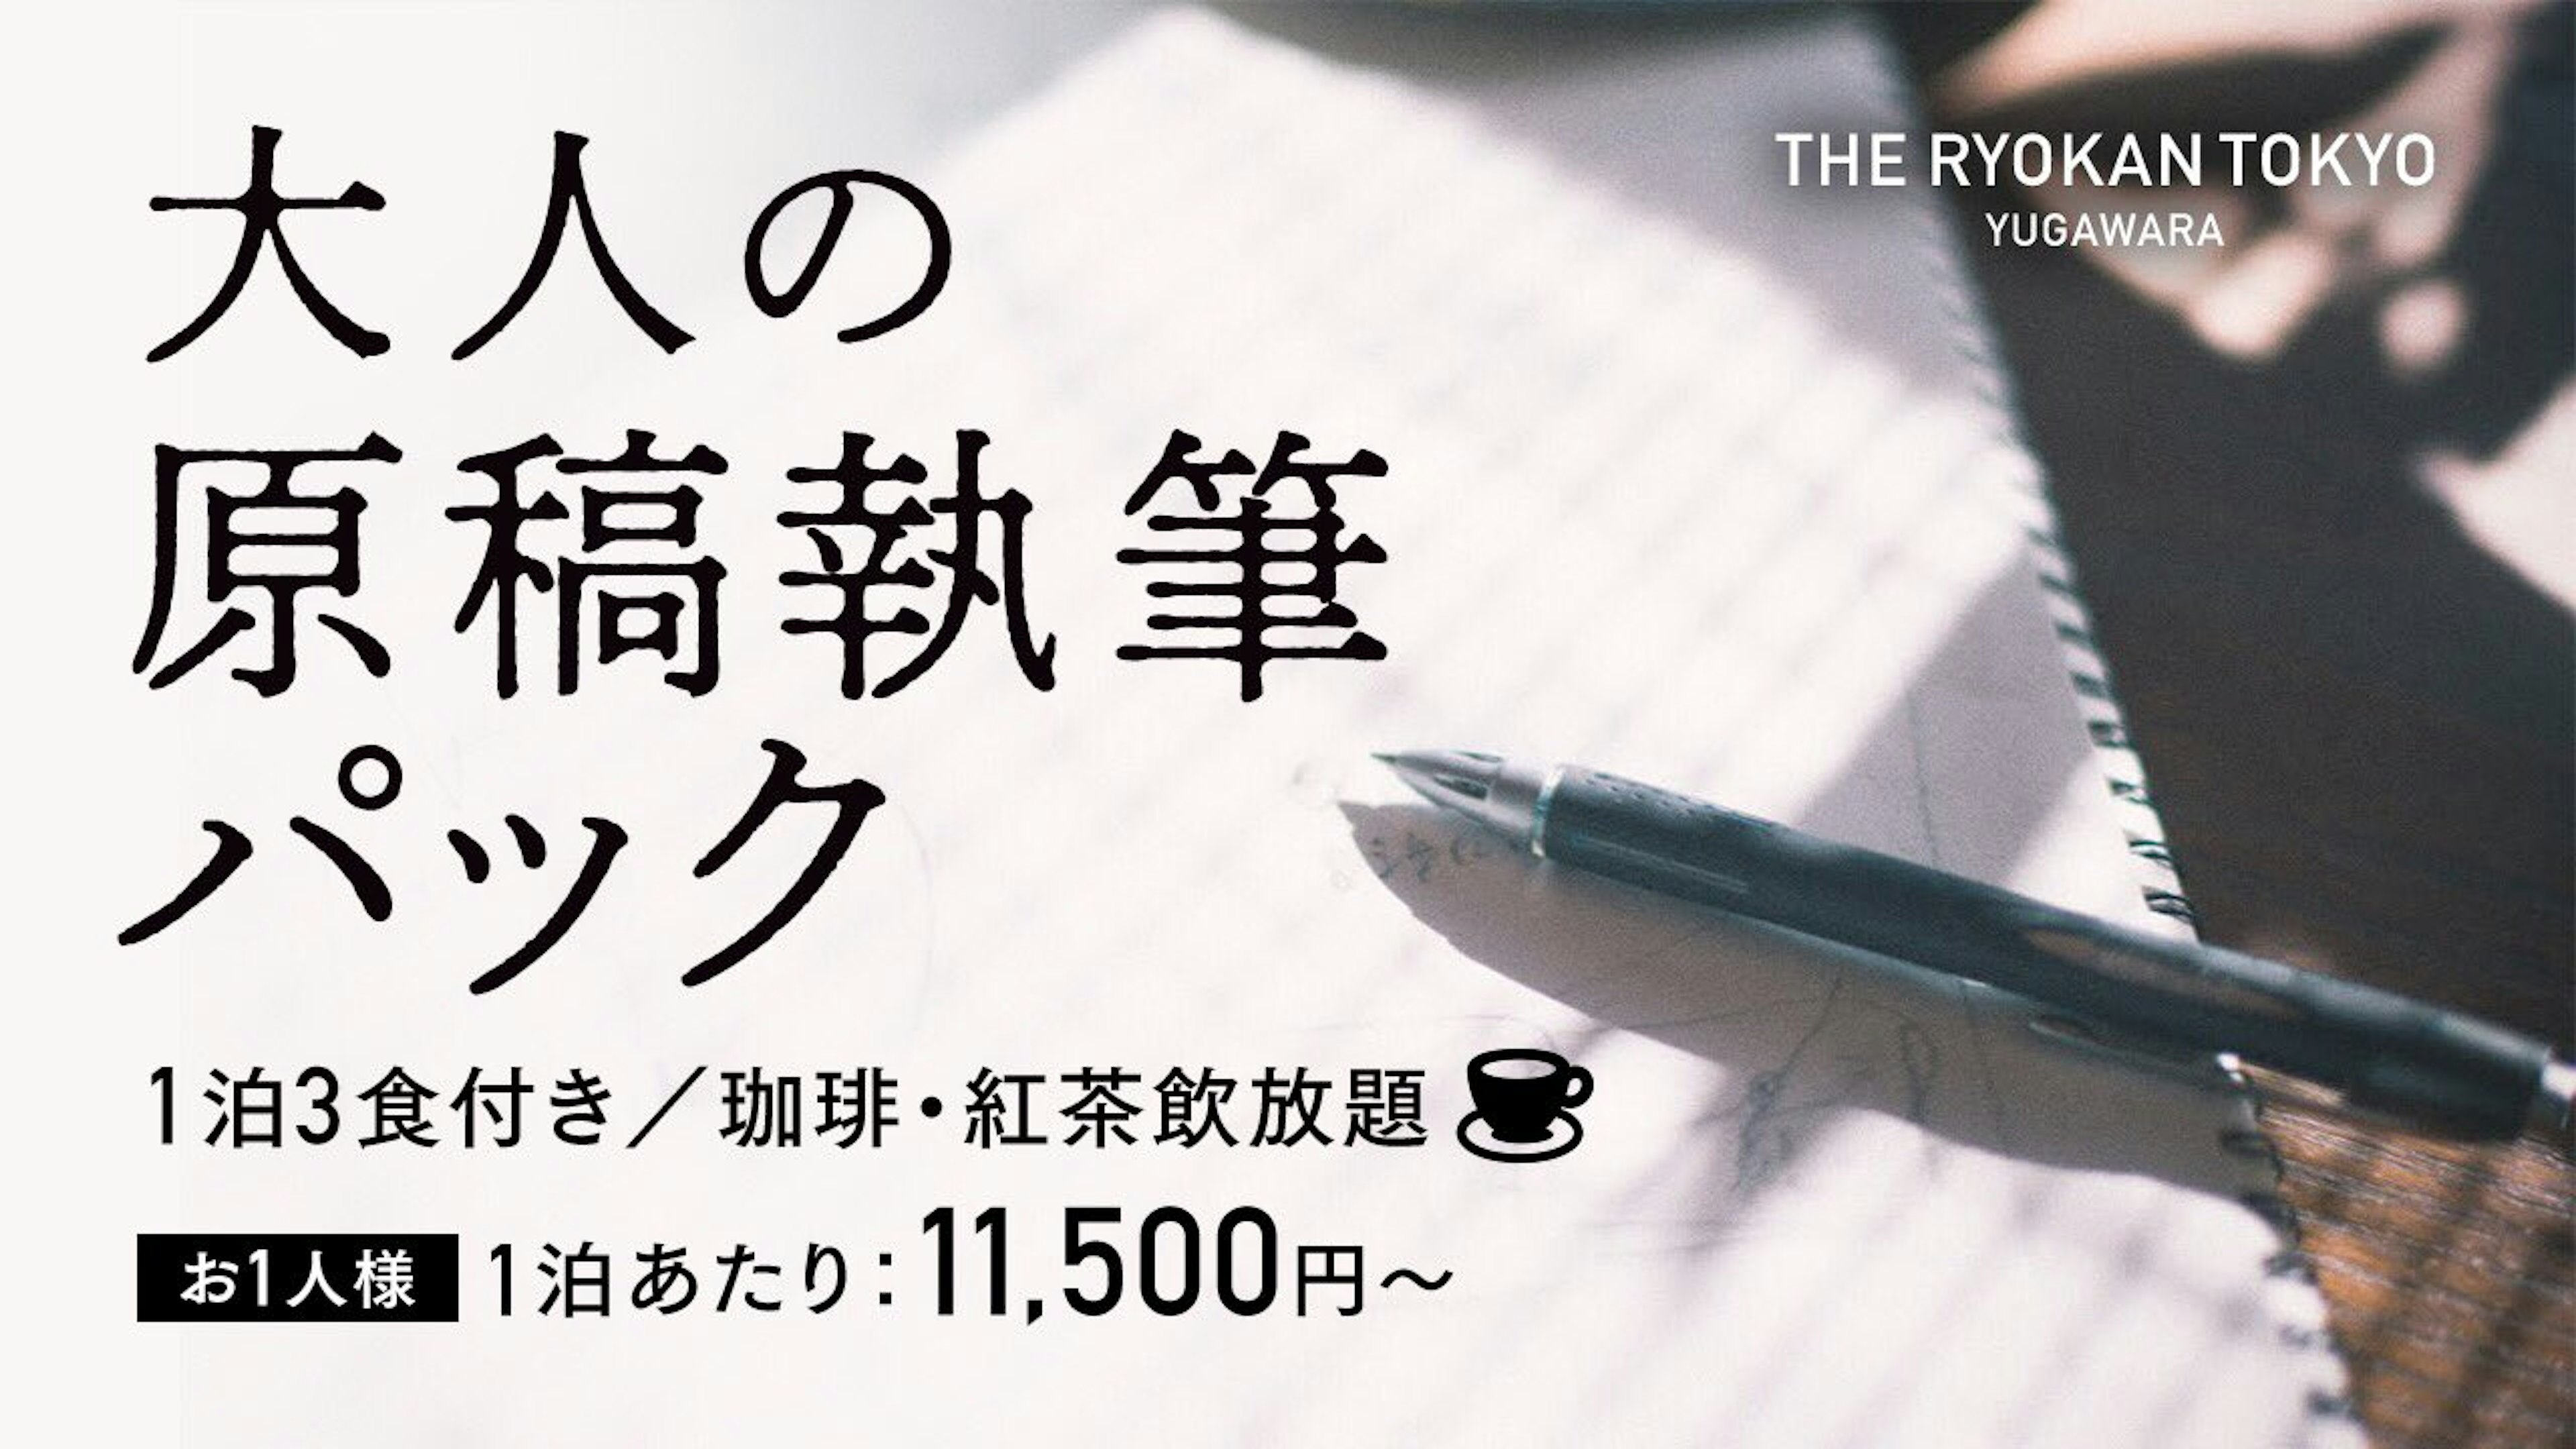 大人の原稿執筆パックはSNSで大反響を呼び、The Ryokan Tokyo YUGAWARAのクリエイターのための宿のブランドイメージを決定づけるキラーコンテンツとなった。